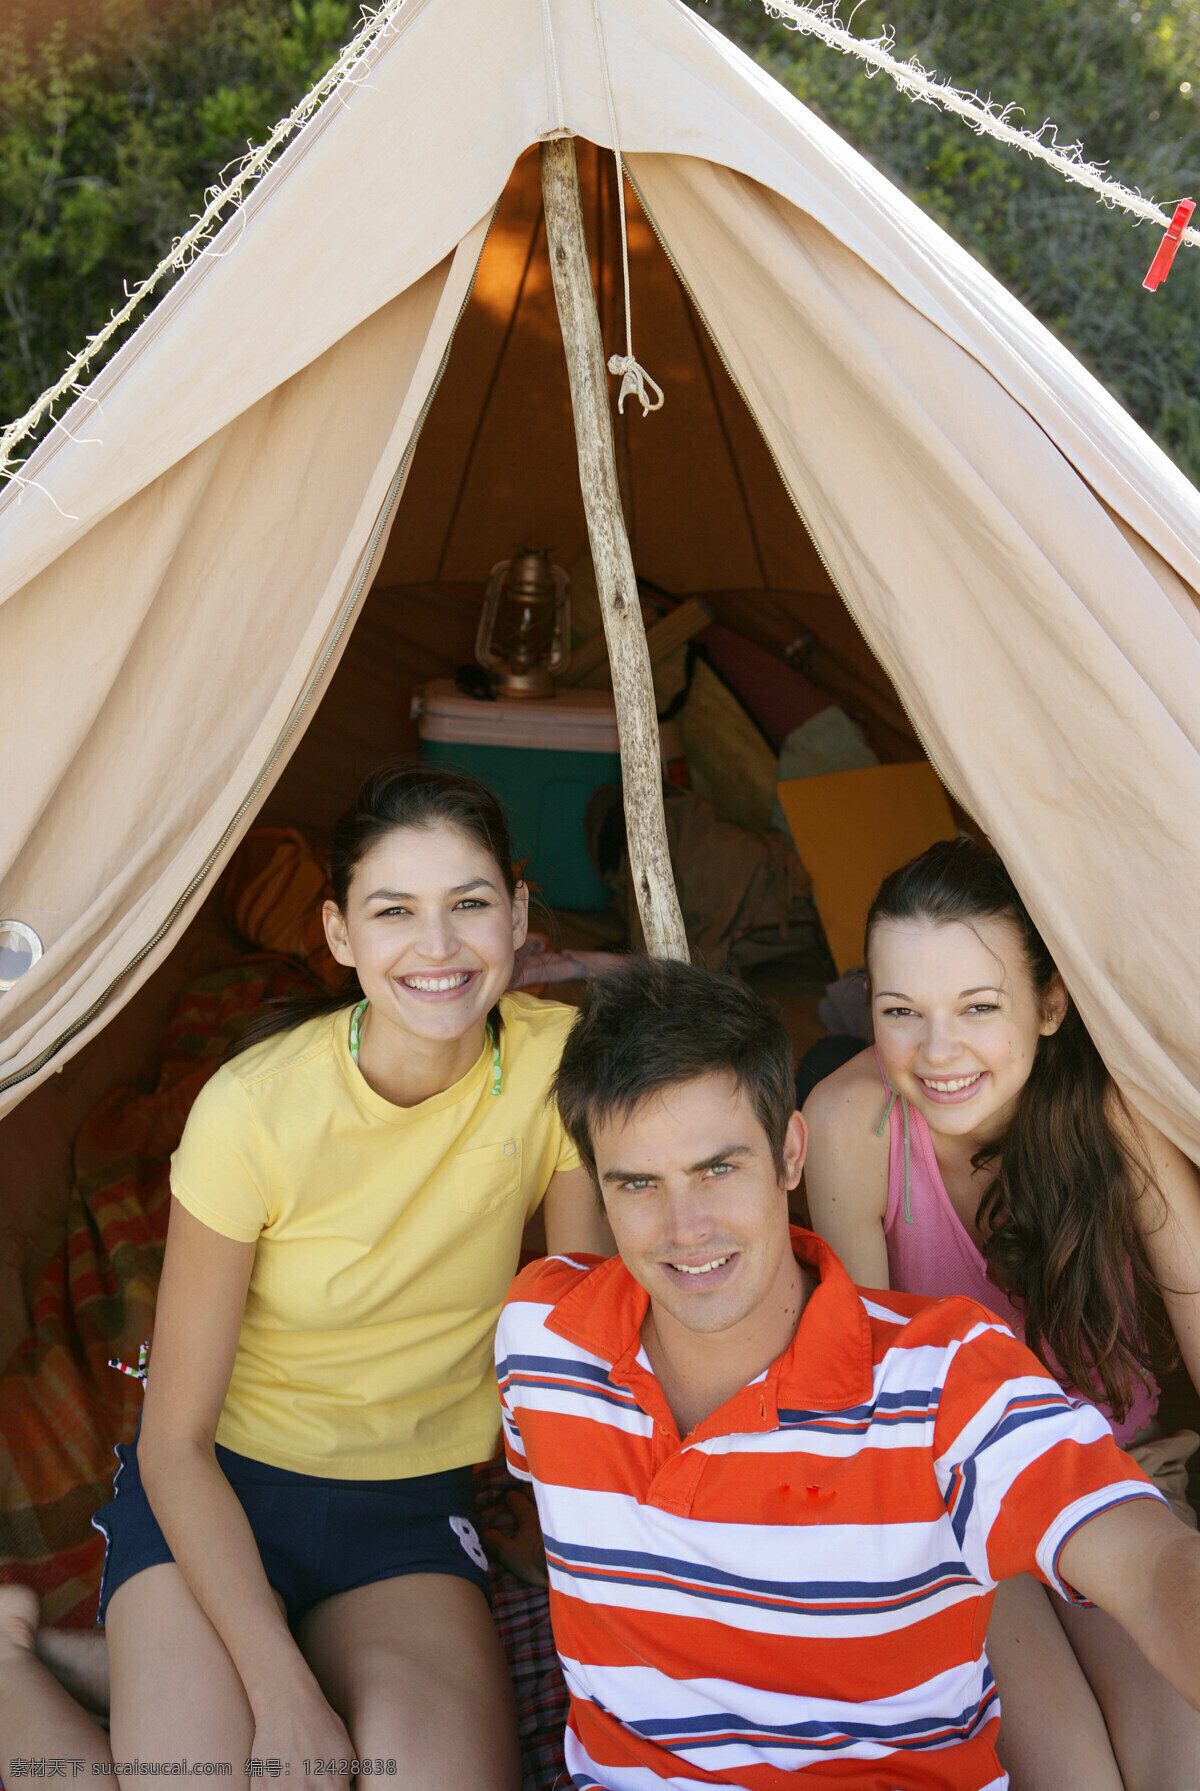 帐篷 里 男女 男孩 女孩 情侣 度假 野外聚餐 美食 野外宿营 生活人物 人物图片